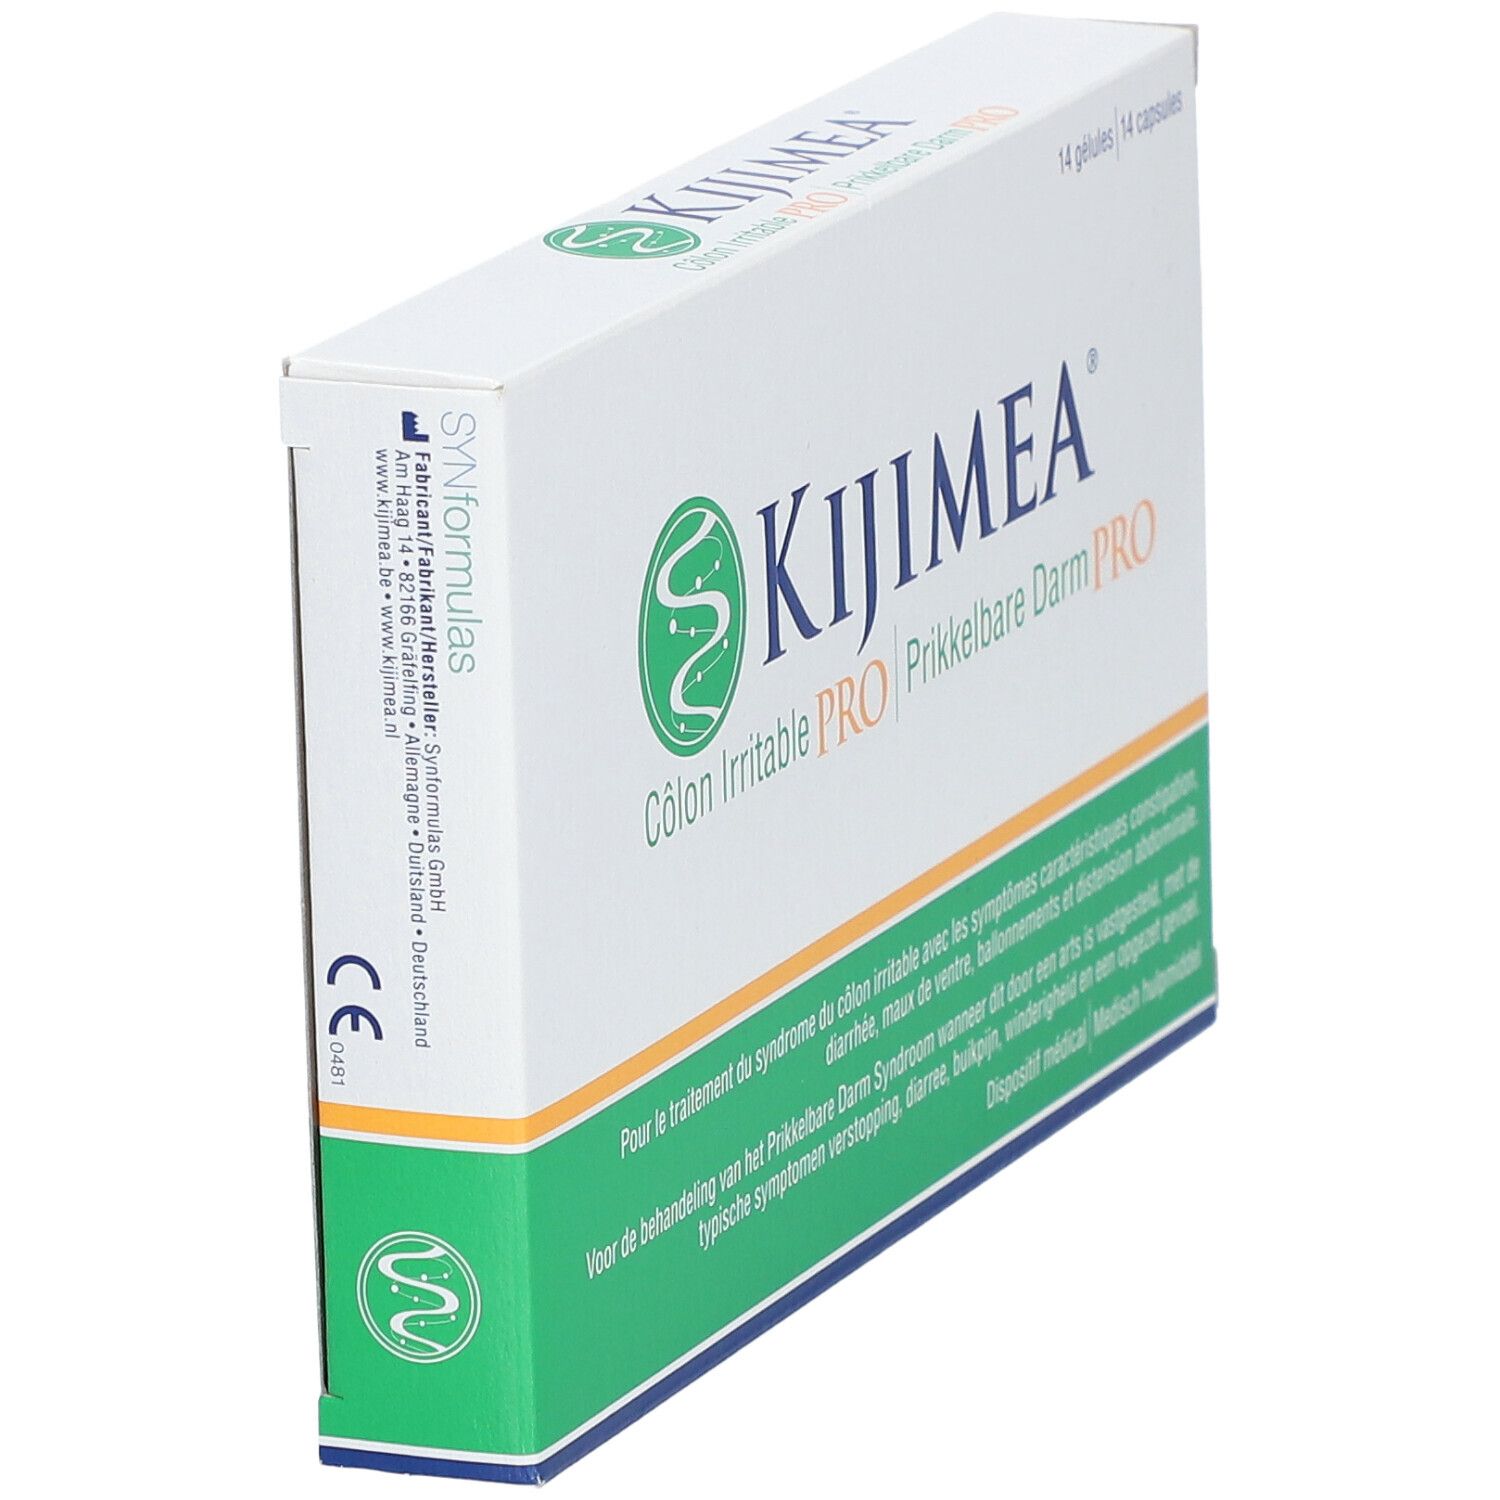 Kijimea Pro Côlon Irritable Boîte de 90 gélules